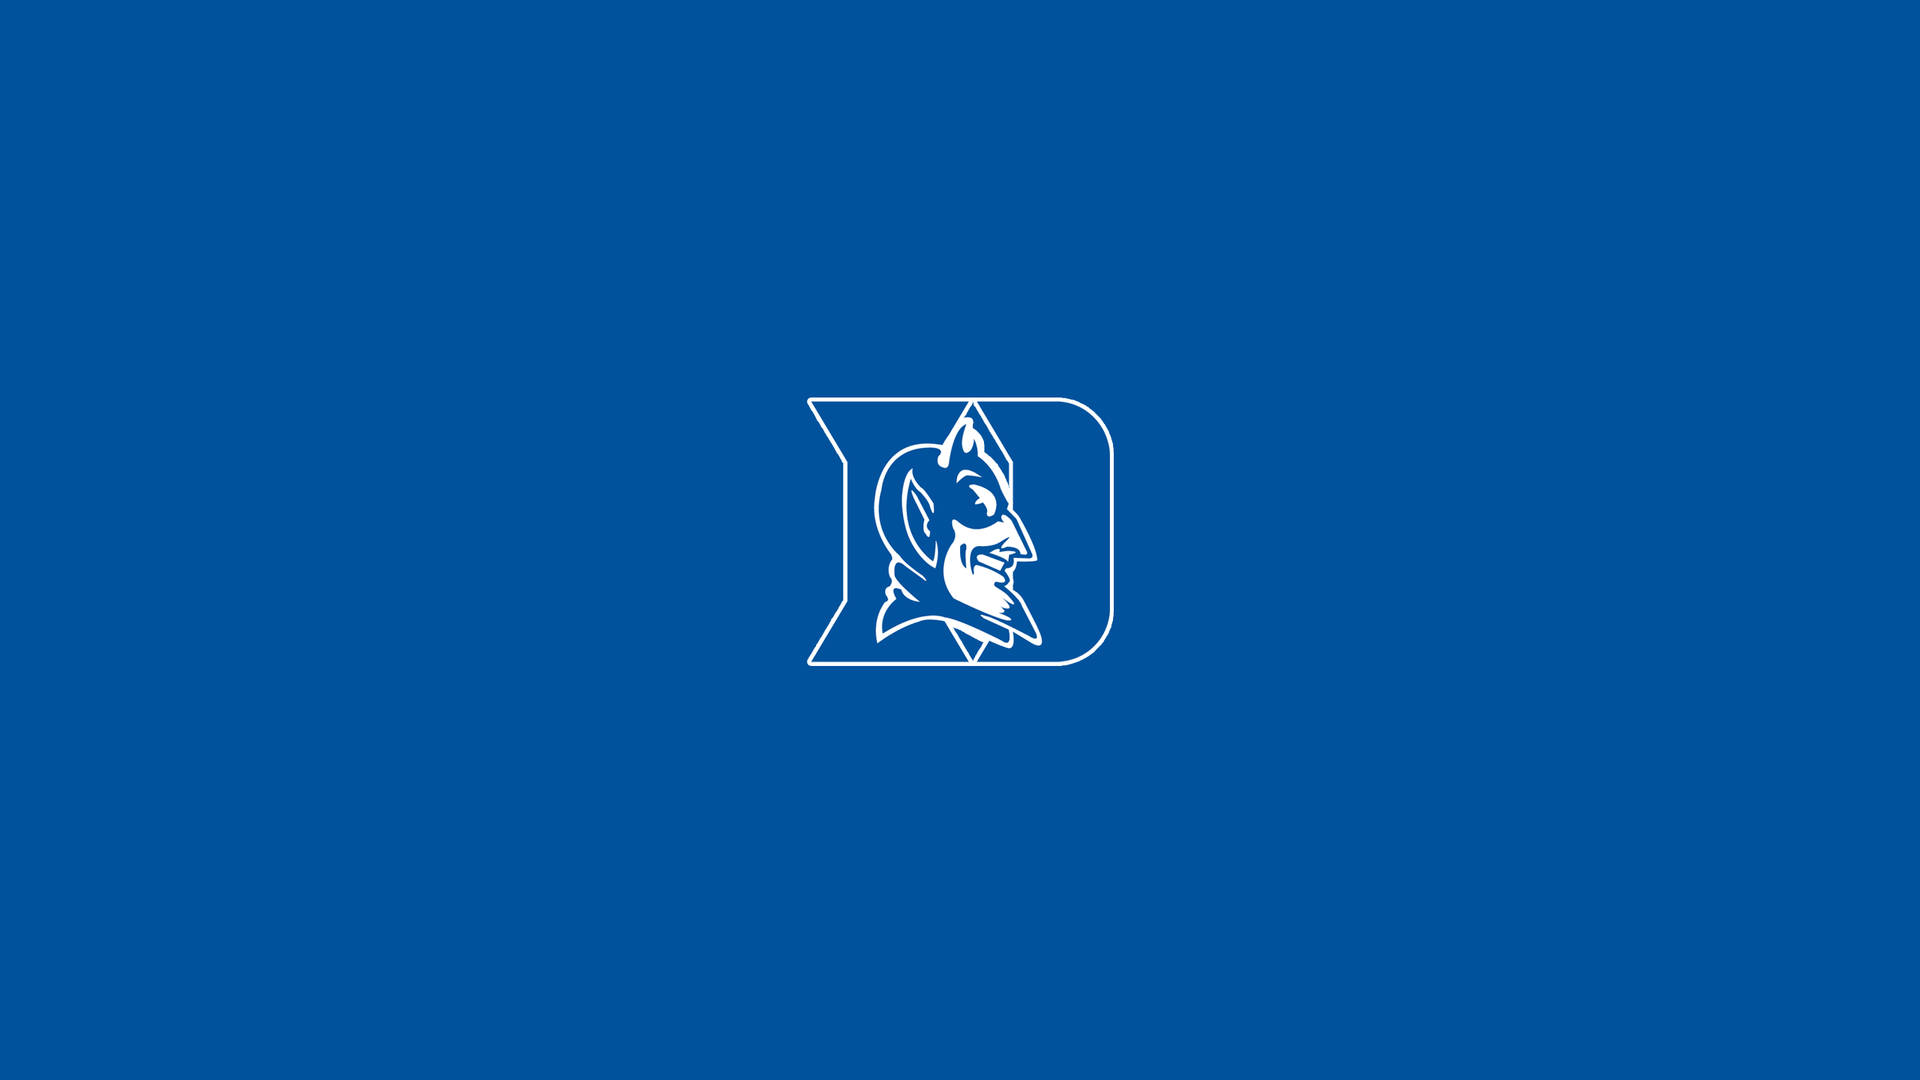 Duke University Blue Devils Wallpaper